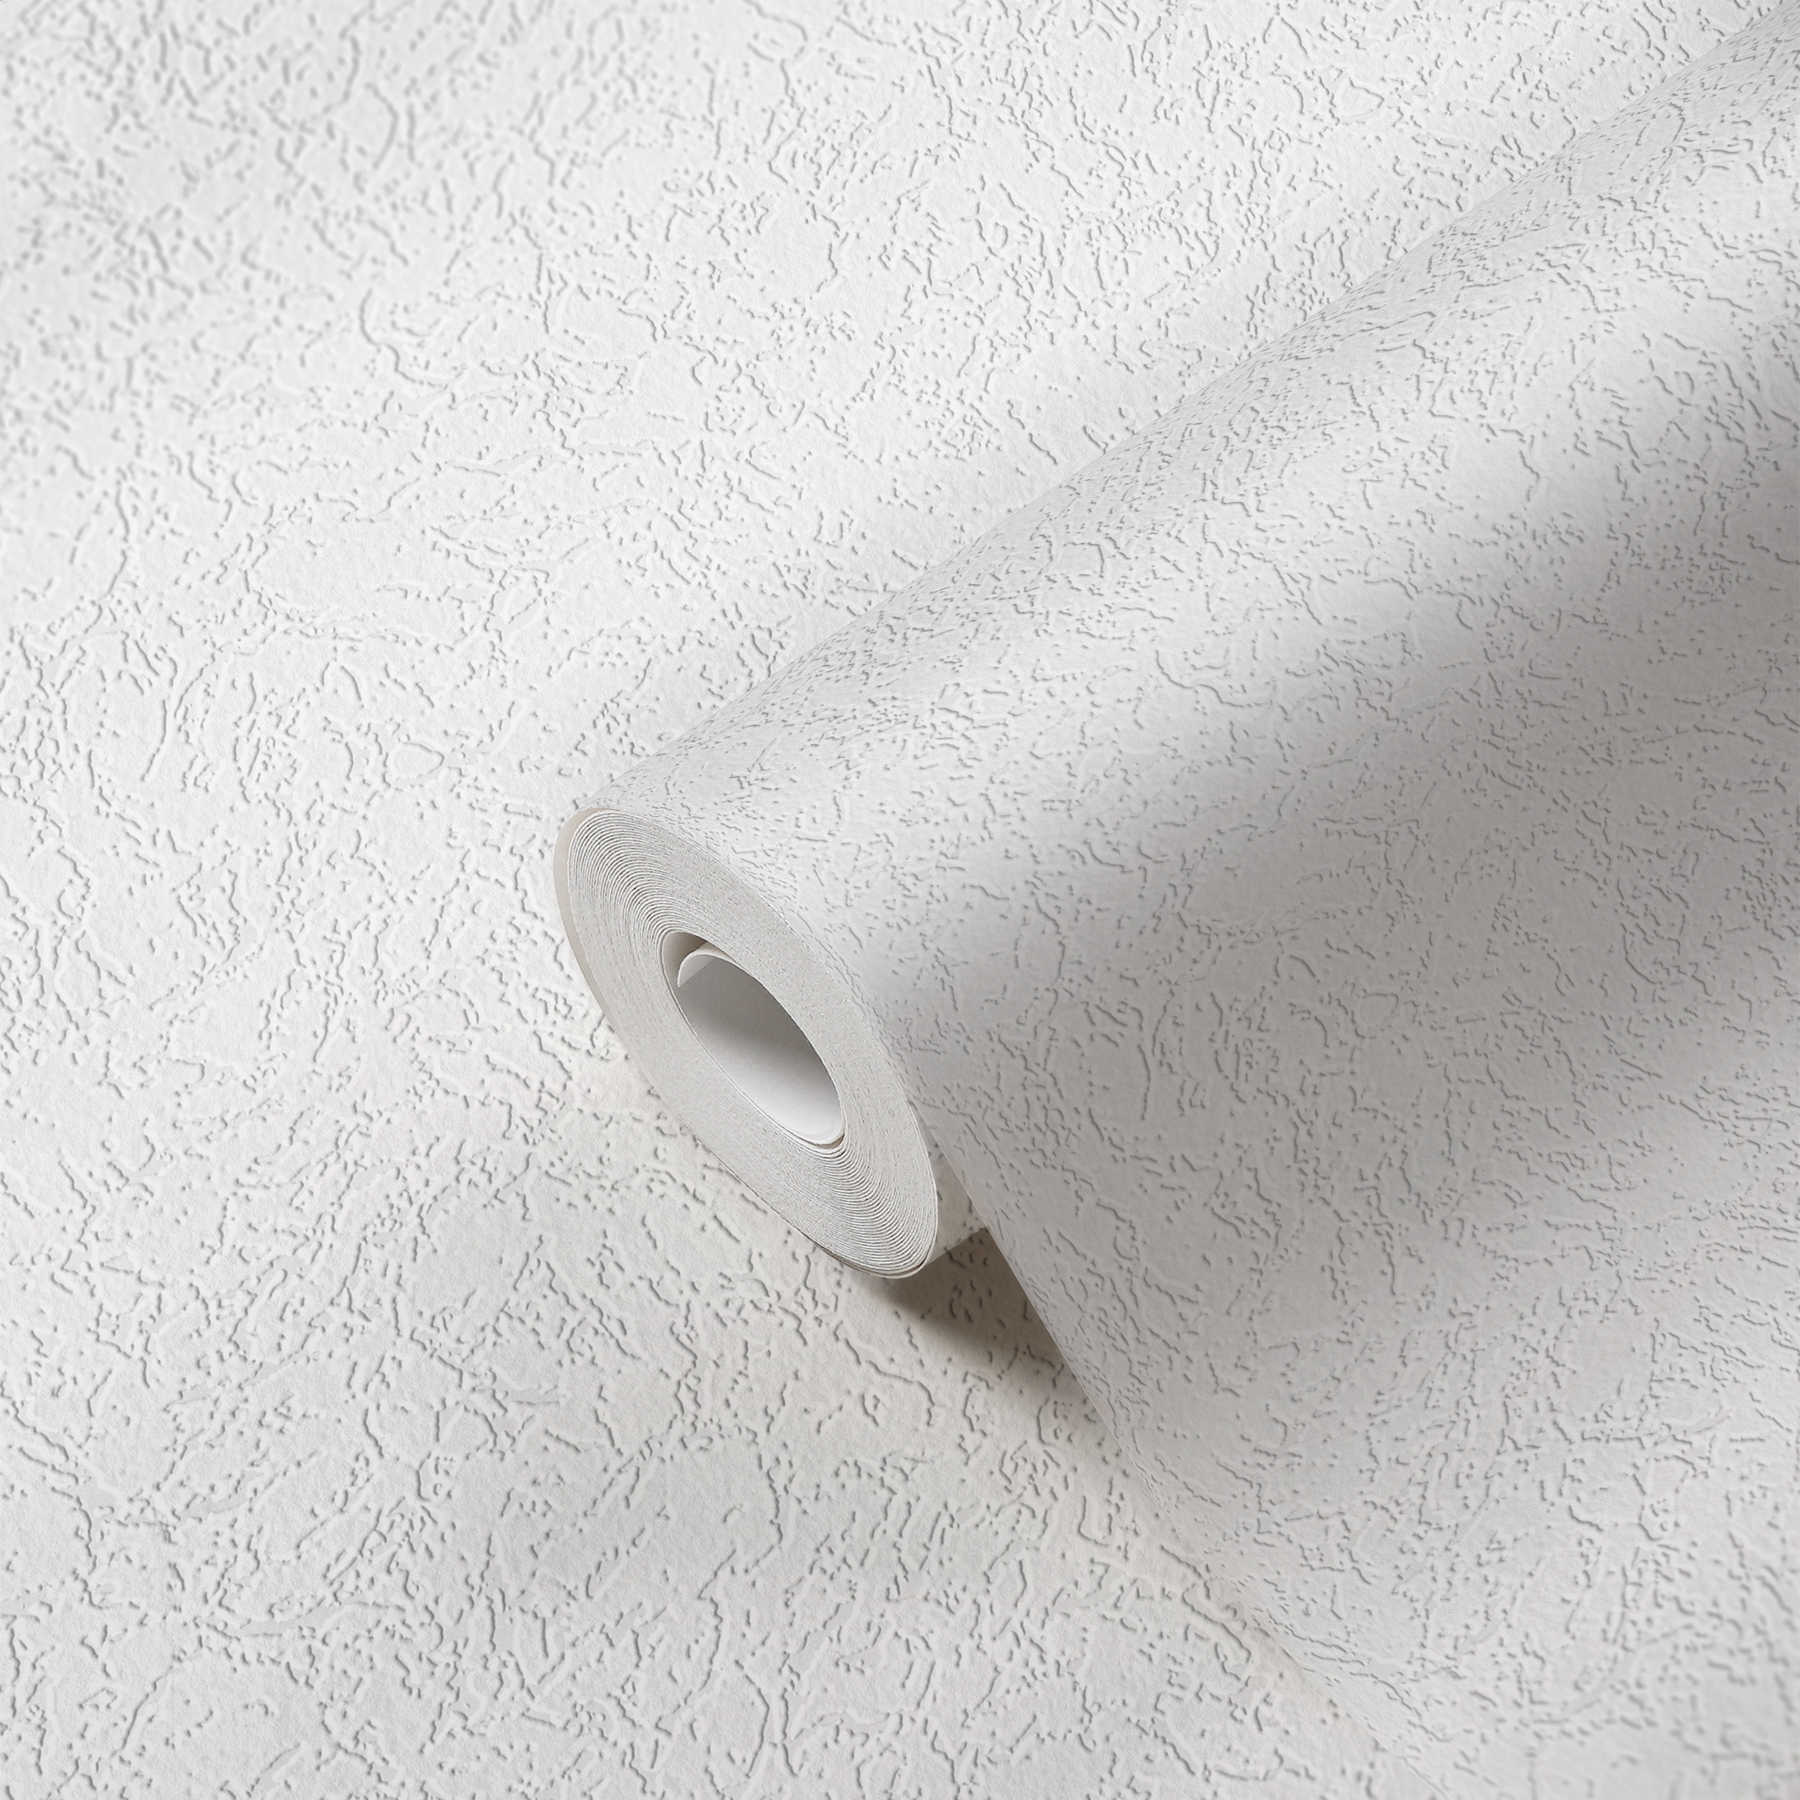             behangpapier roughcast opic zuiver wit met structuureffect - wit
        